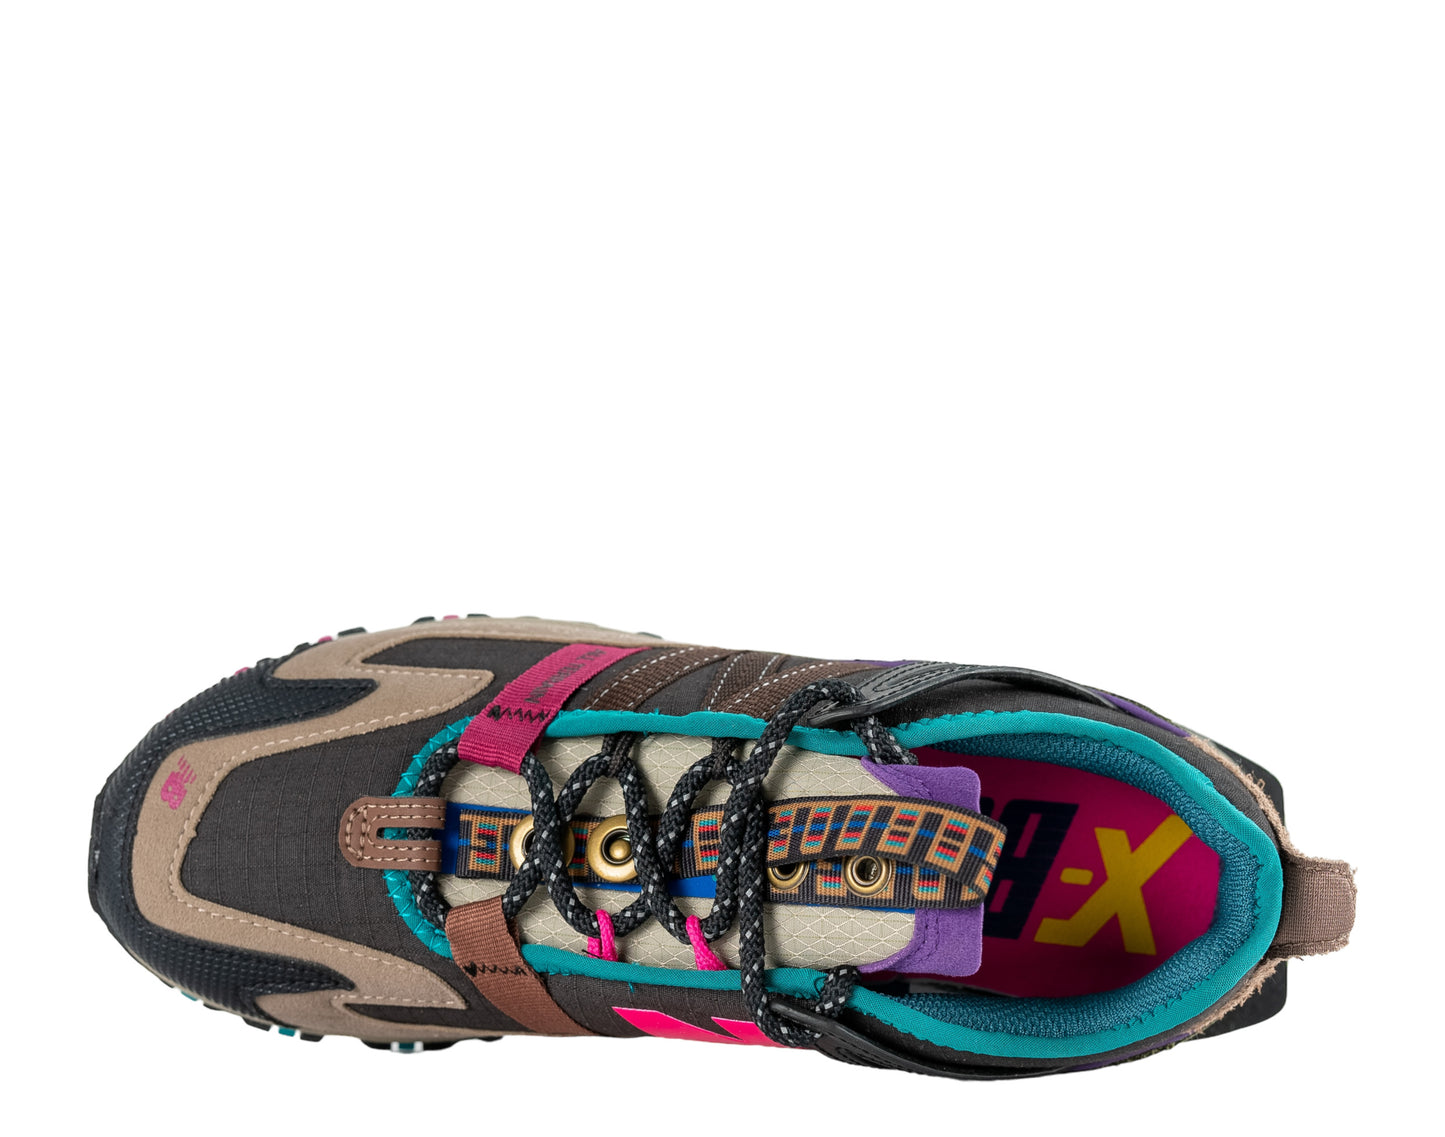 New Balance x Bodega X-Racer Men's Running Shoes